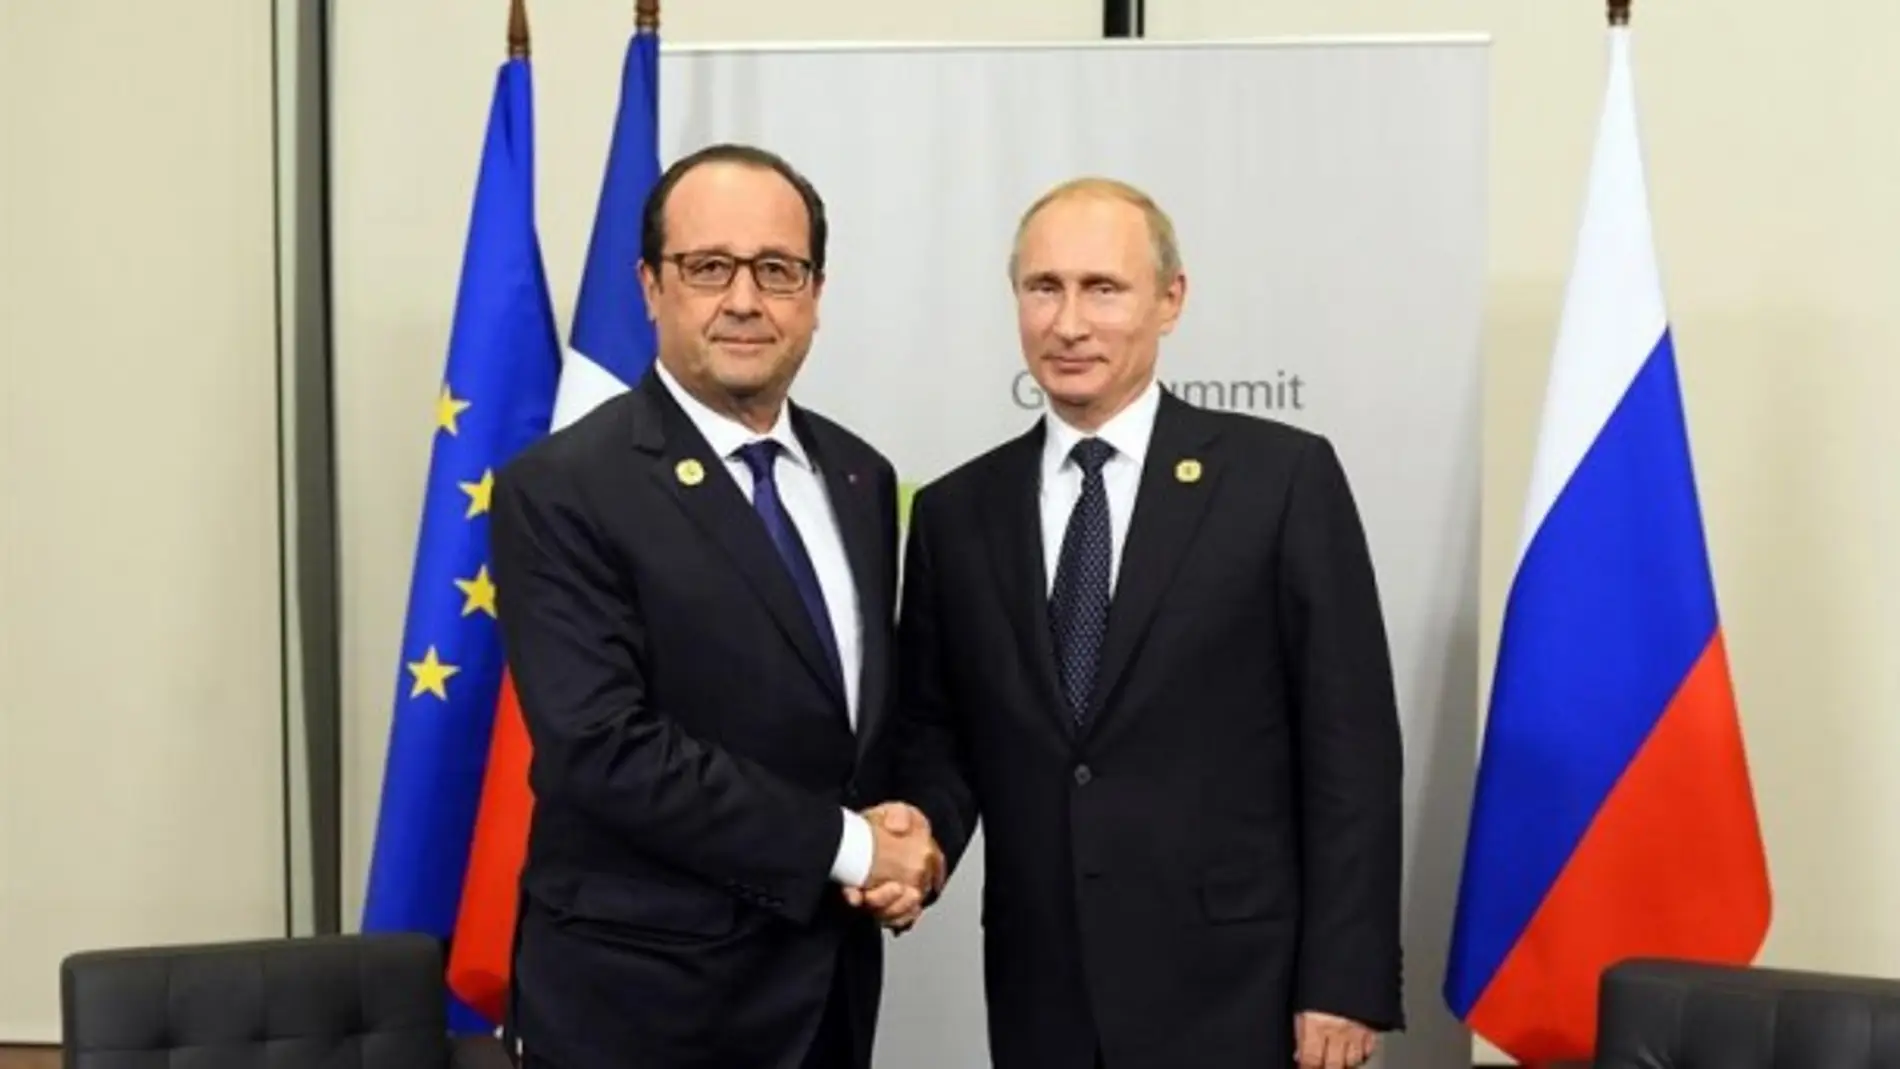 El presidente francés, François Hollande, y su homólogo ruso, Vladimir Putin